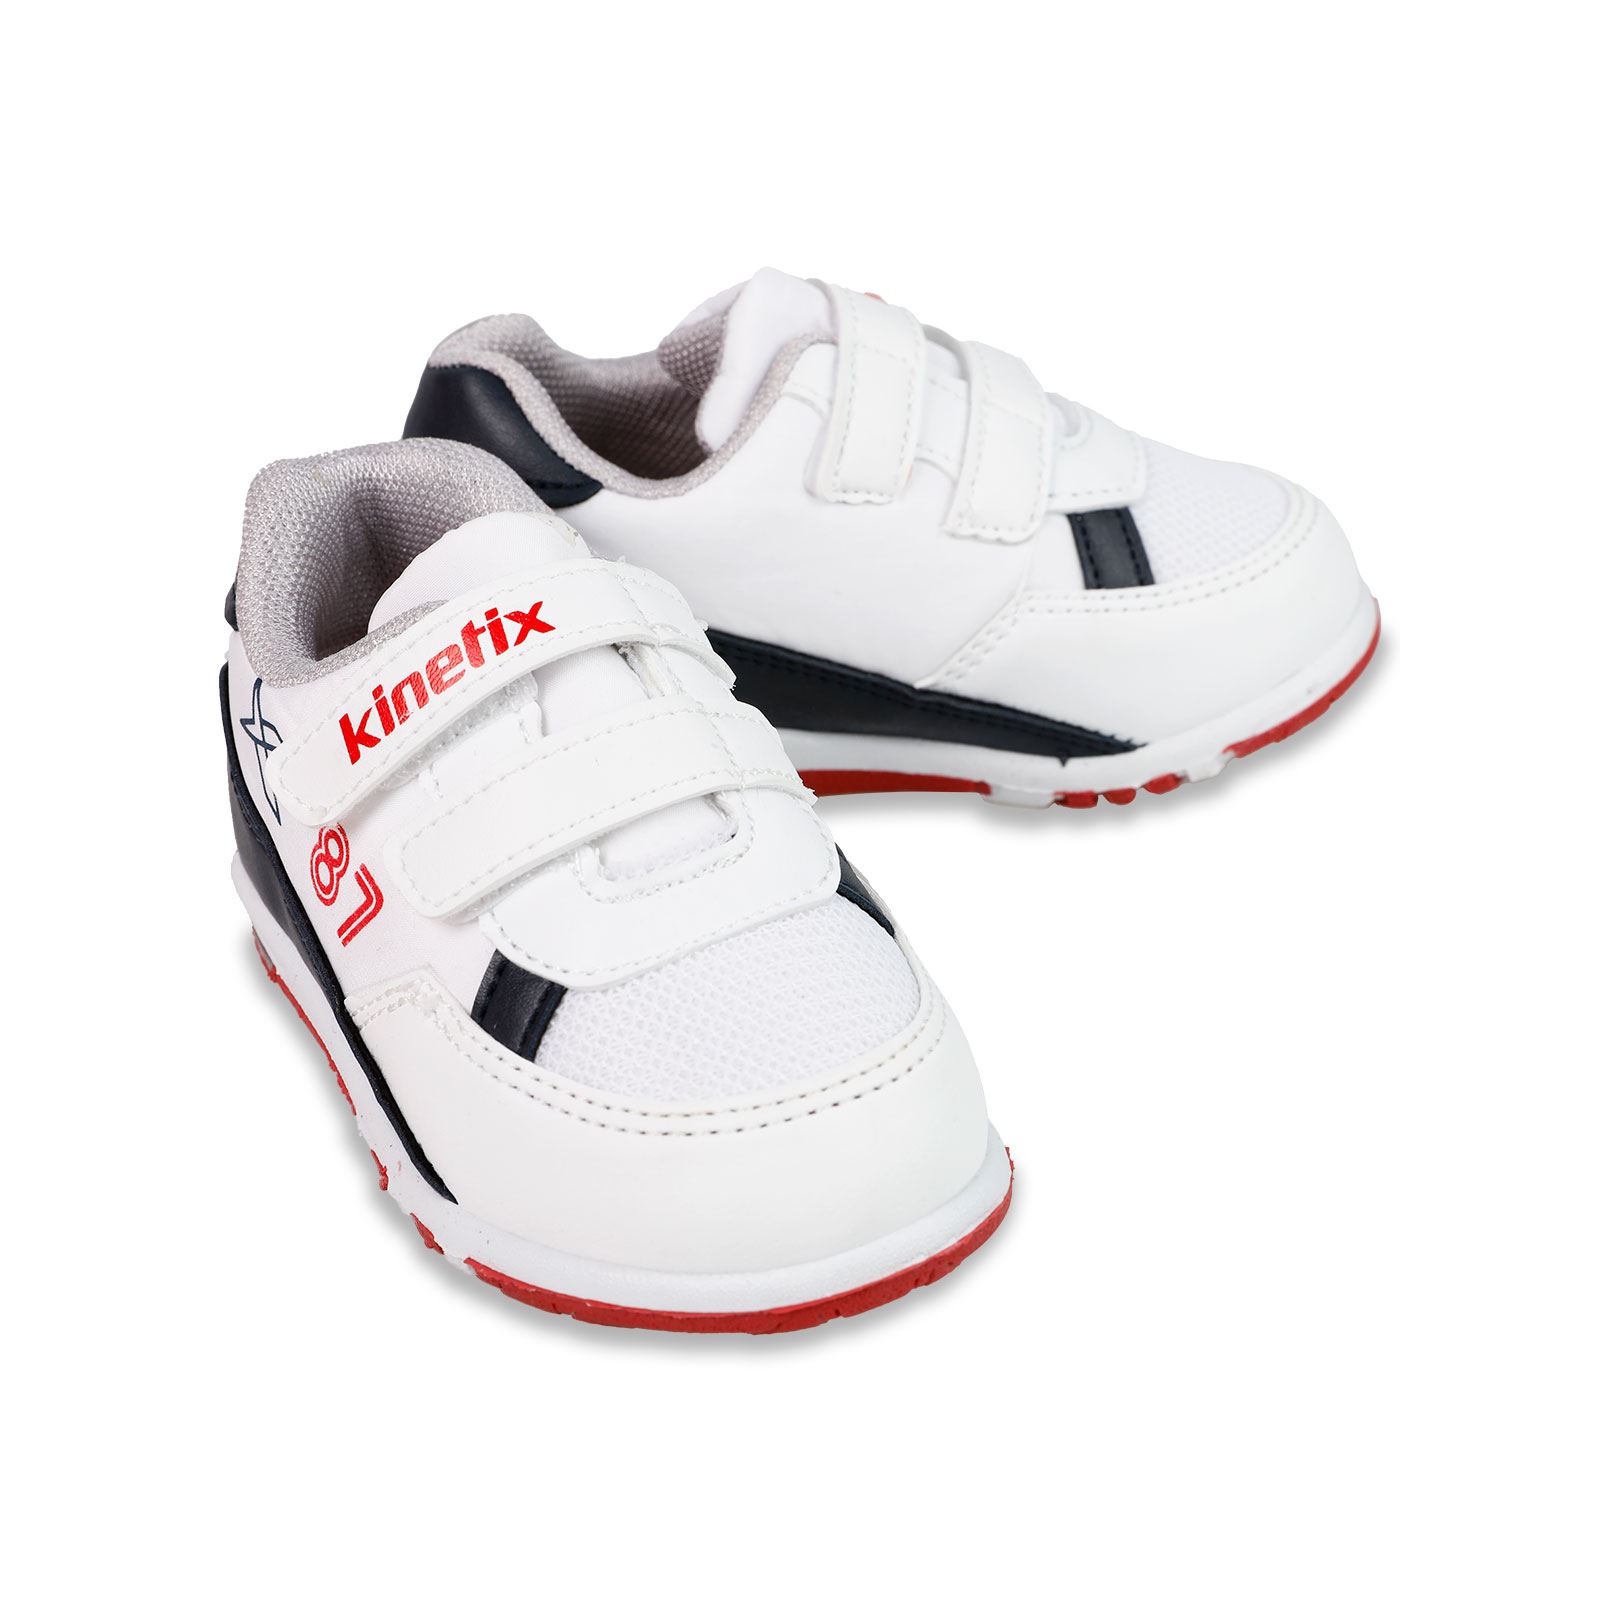 Kinetix Erkek Çocuk Spor Ayakkabı 21-25 Numara Beyaz